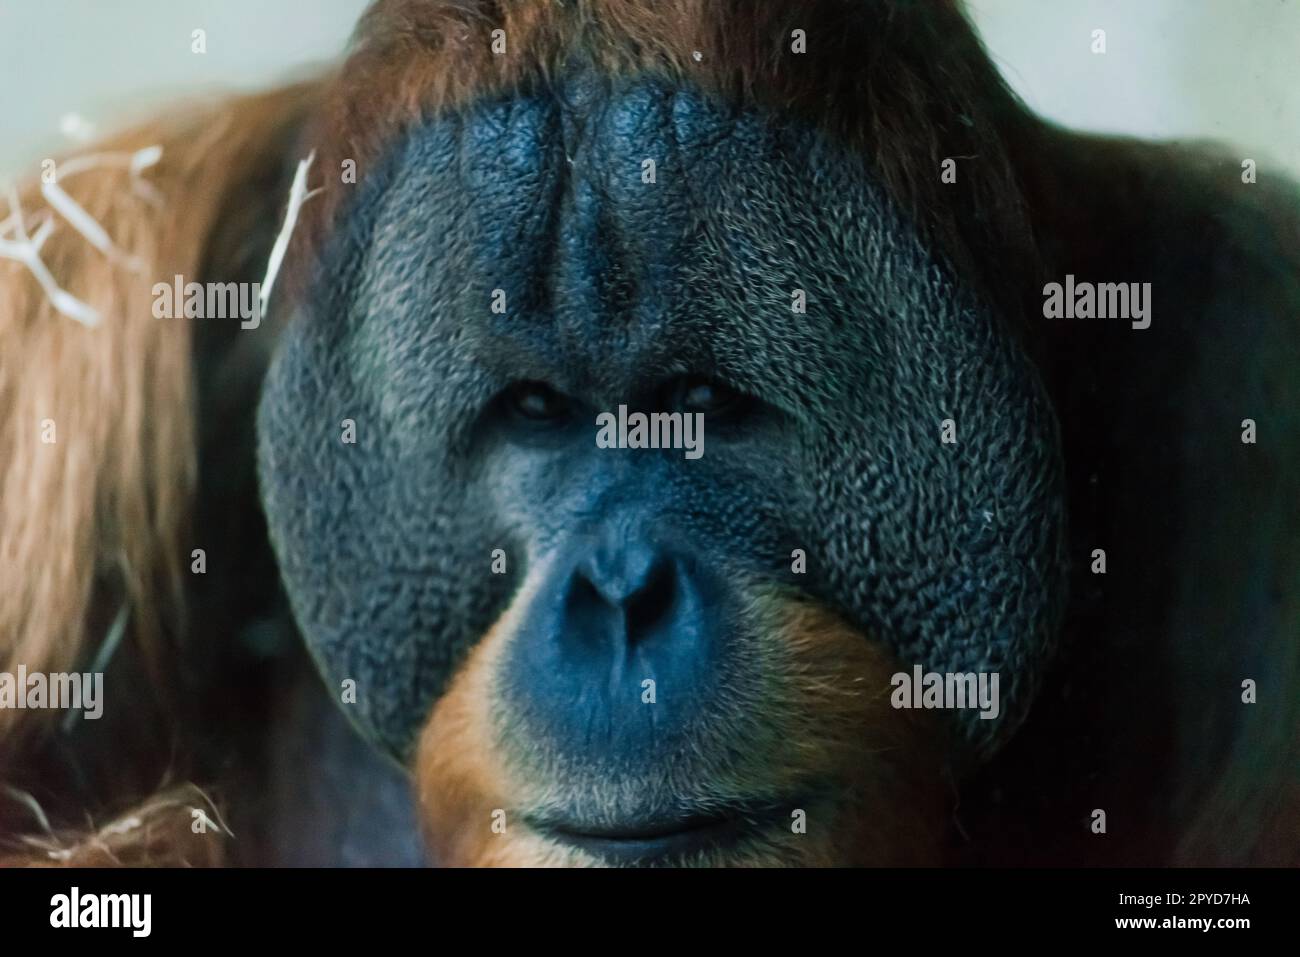 Bornean old big orangutan, pongo pygmaeus, detail head male Stock Photo